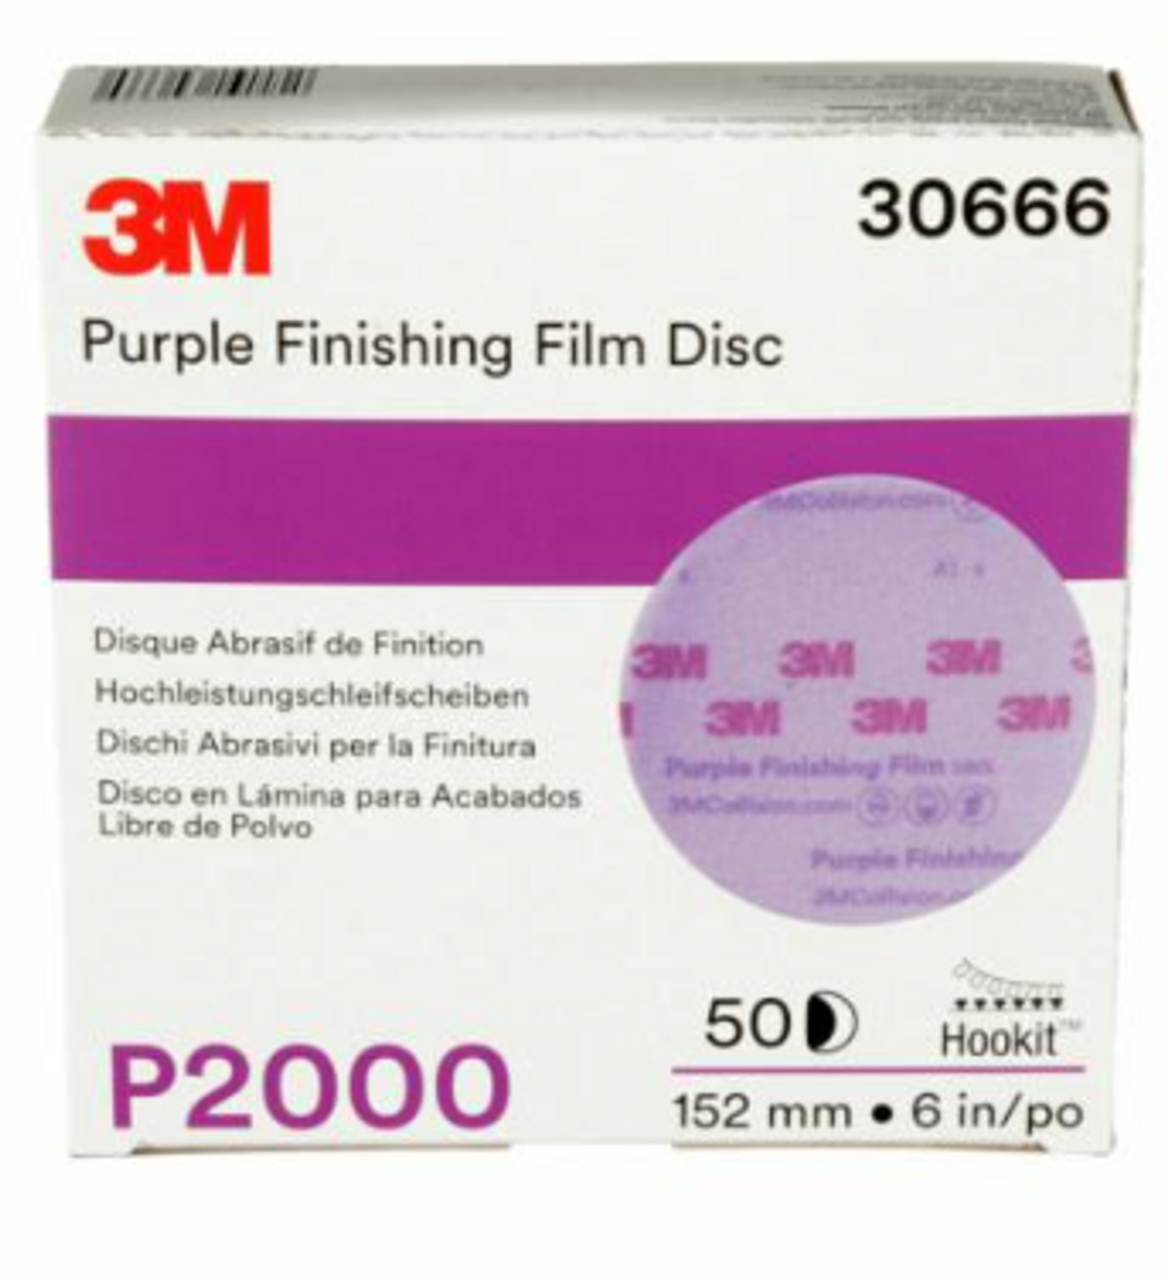 Hookit™ Purple Finishing Film Abrasive Disc 6" 2000 Grit, 50 discs per carton